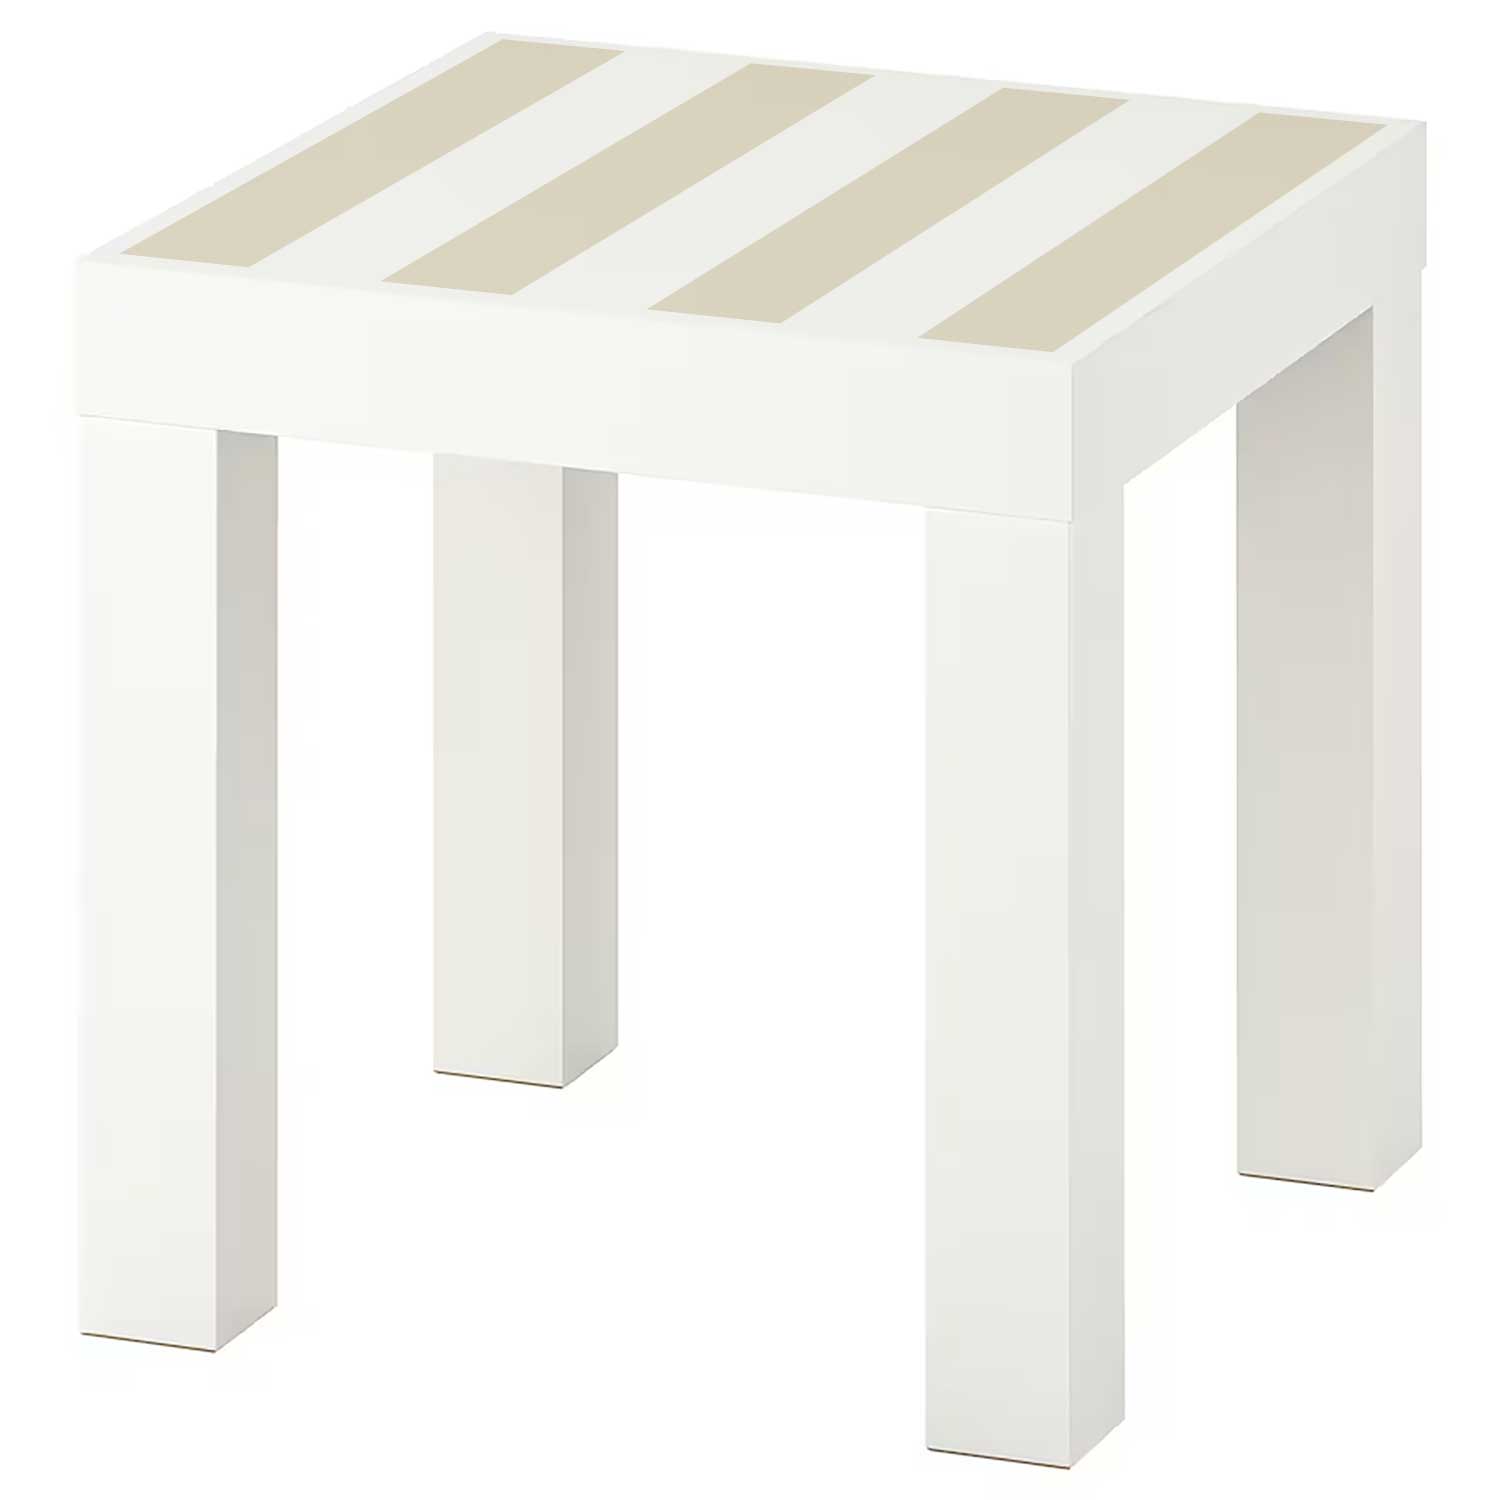 Möbelfolie für IKEA Lack Tisch 35x35 cm 'Streifen'